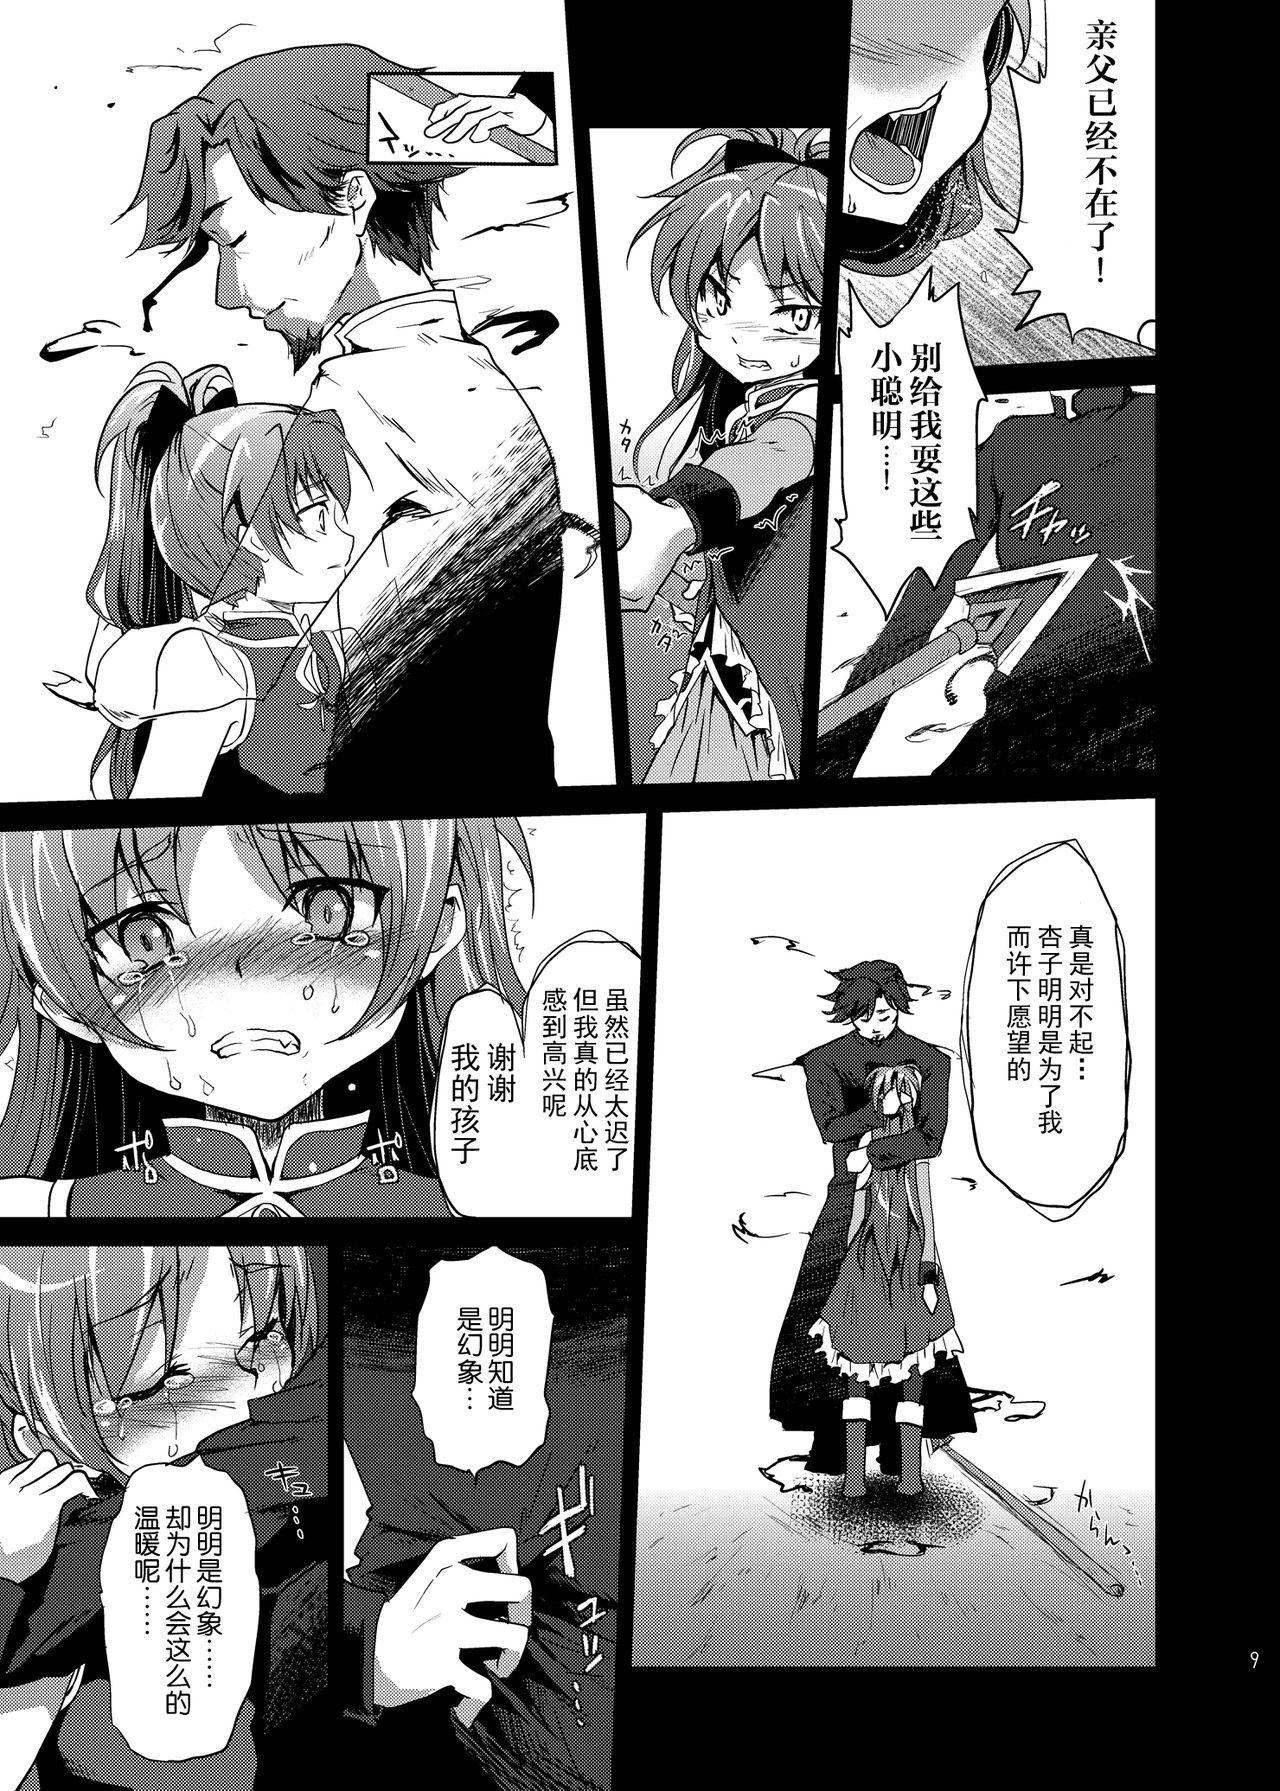 Teenage Mahou Shoujo Zetsubou Kansatsu Kiroku - Puella magi madoka magica Cdmx - Page 8